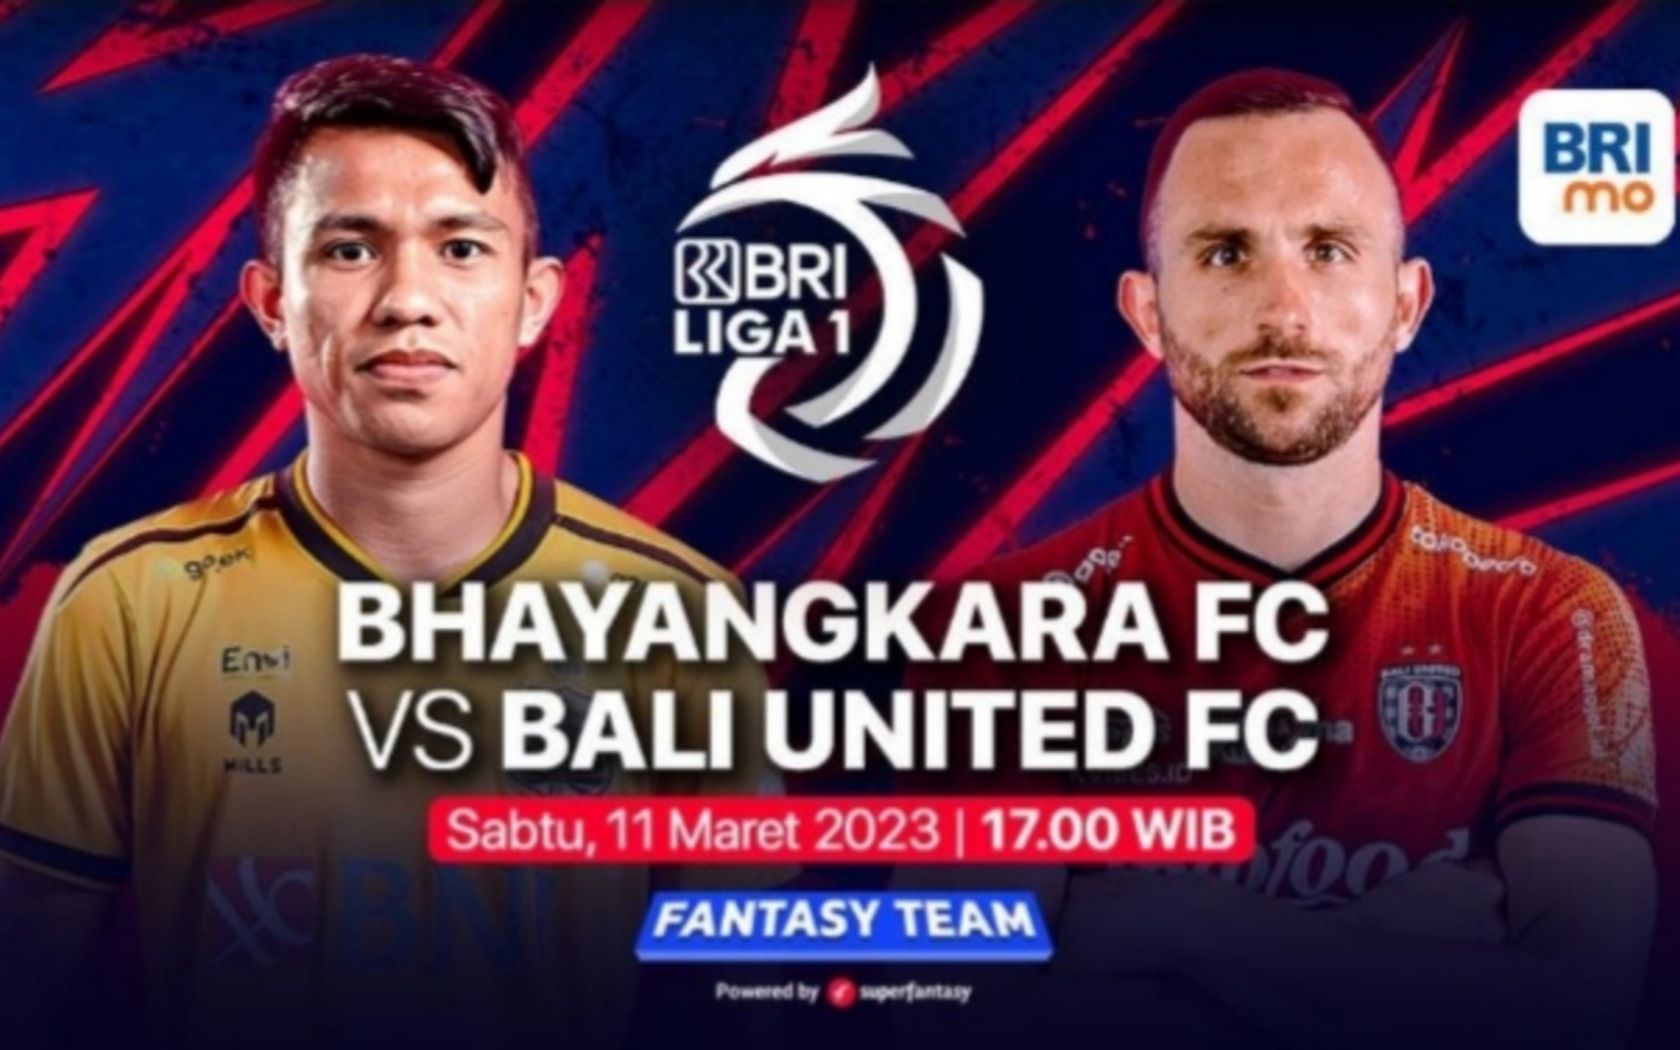 Prediksi formasi susunan pemain Bhayangkara FC vs Bali United pertandingan BRI Liga 1 hari ini